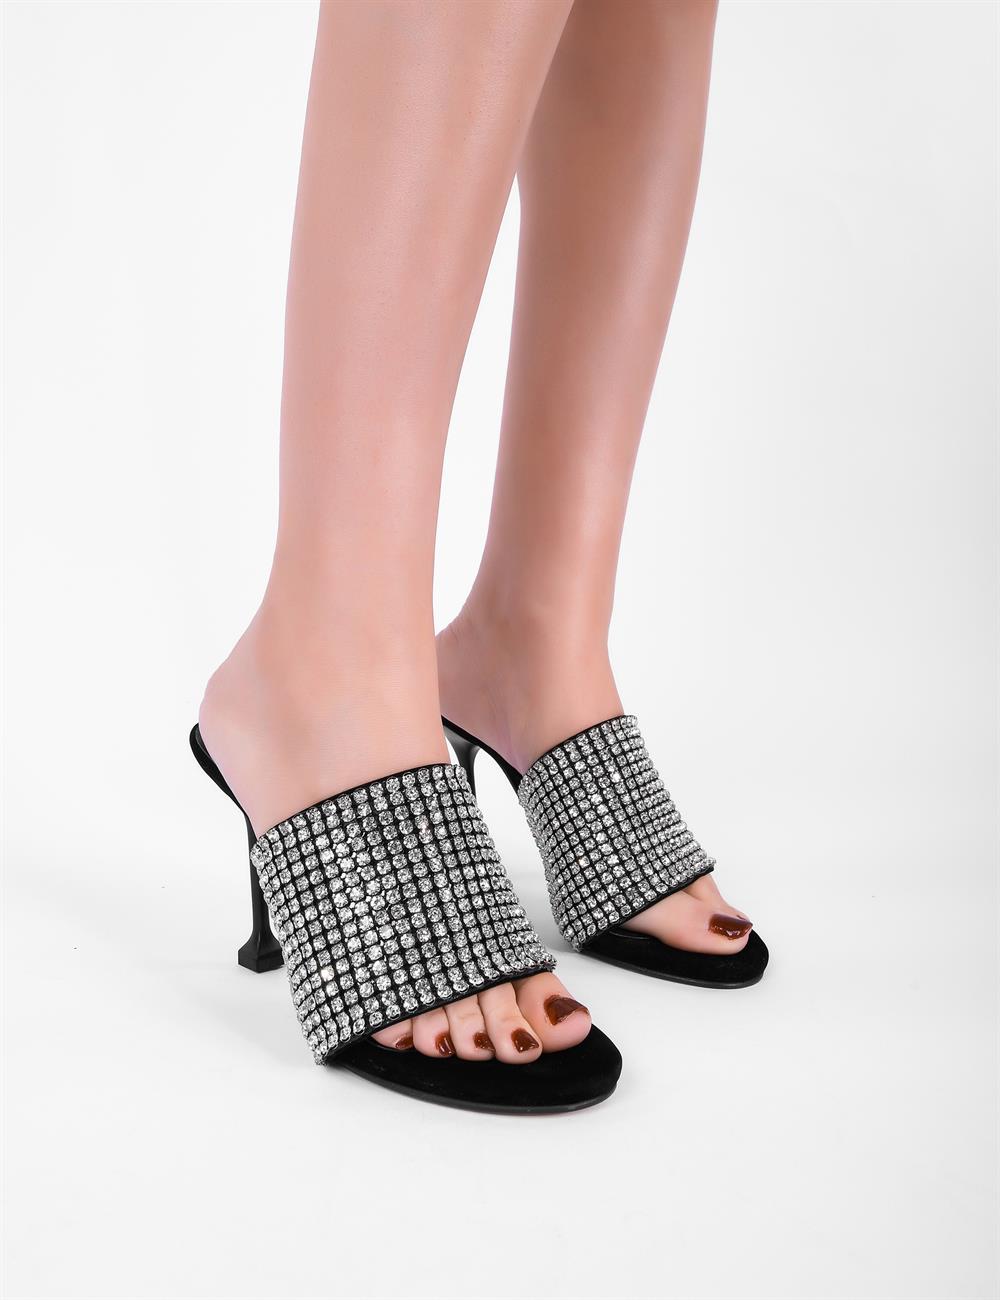 Style Fashion Kristal Taşlı Topuklu Kadın Ayakkabı Siyah - KADIN AYAKKABI